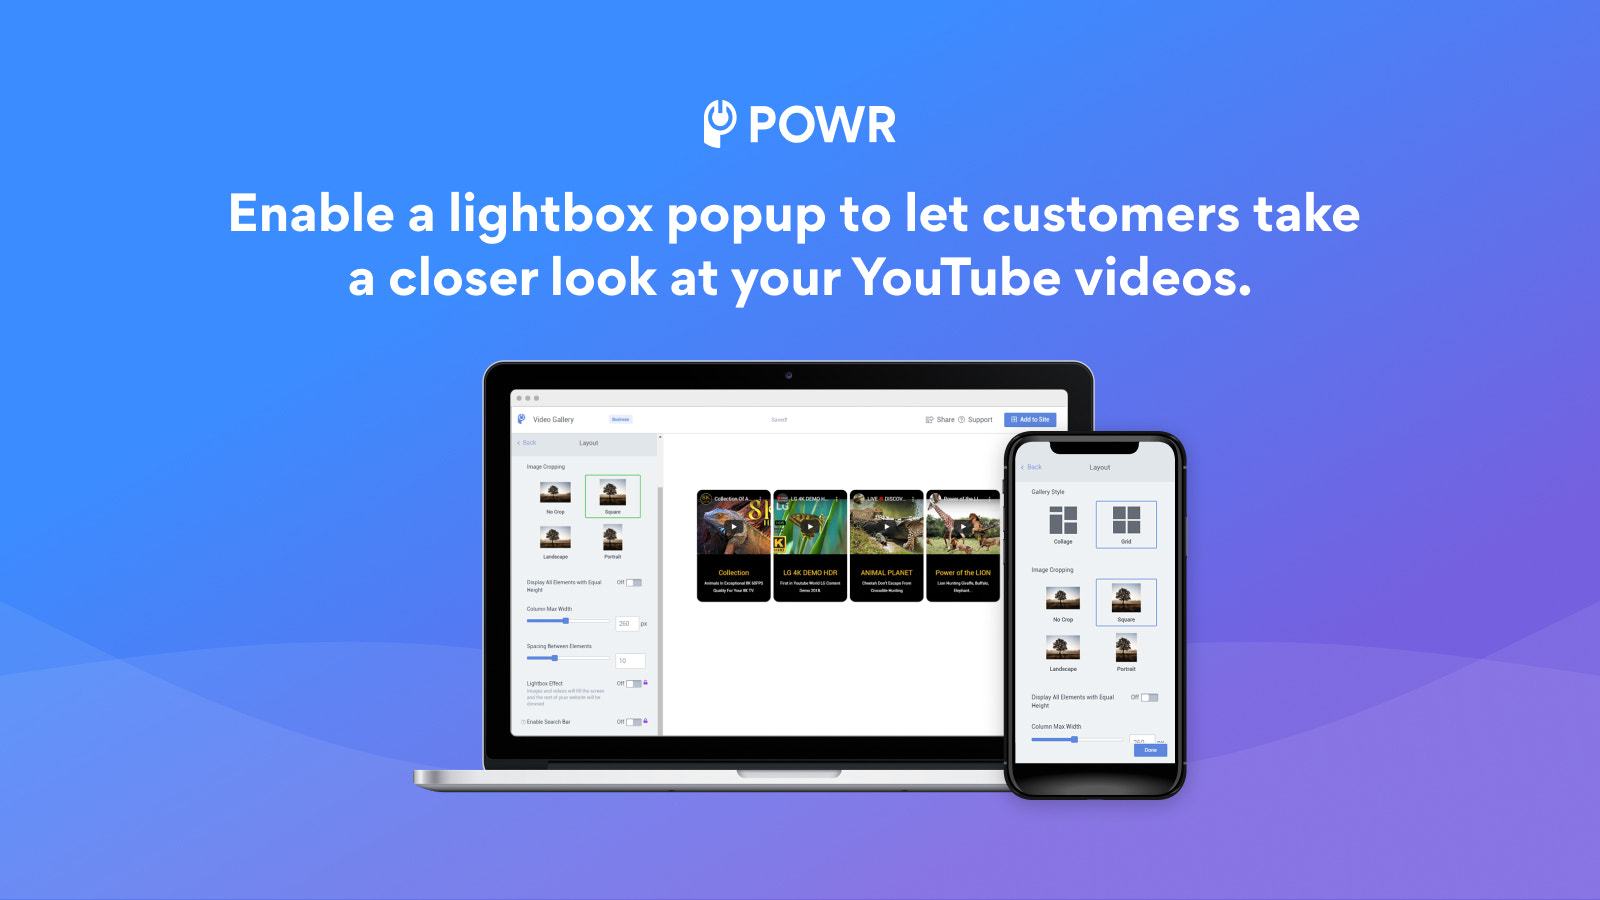 Aktivieren Sie das Lightbox-Popup, damit Kunden YouTube-Videos betrachten können.